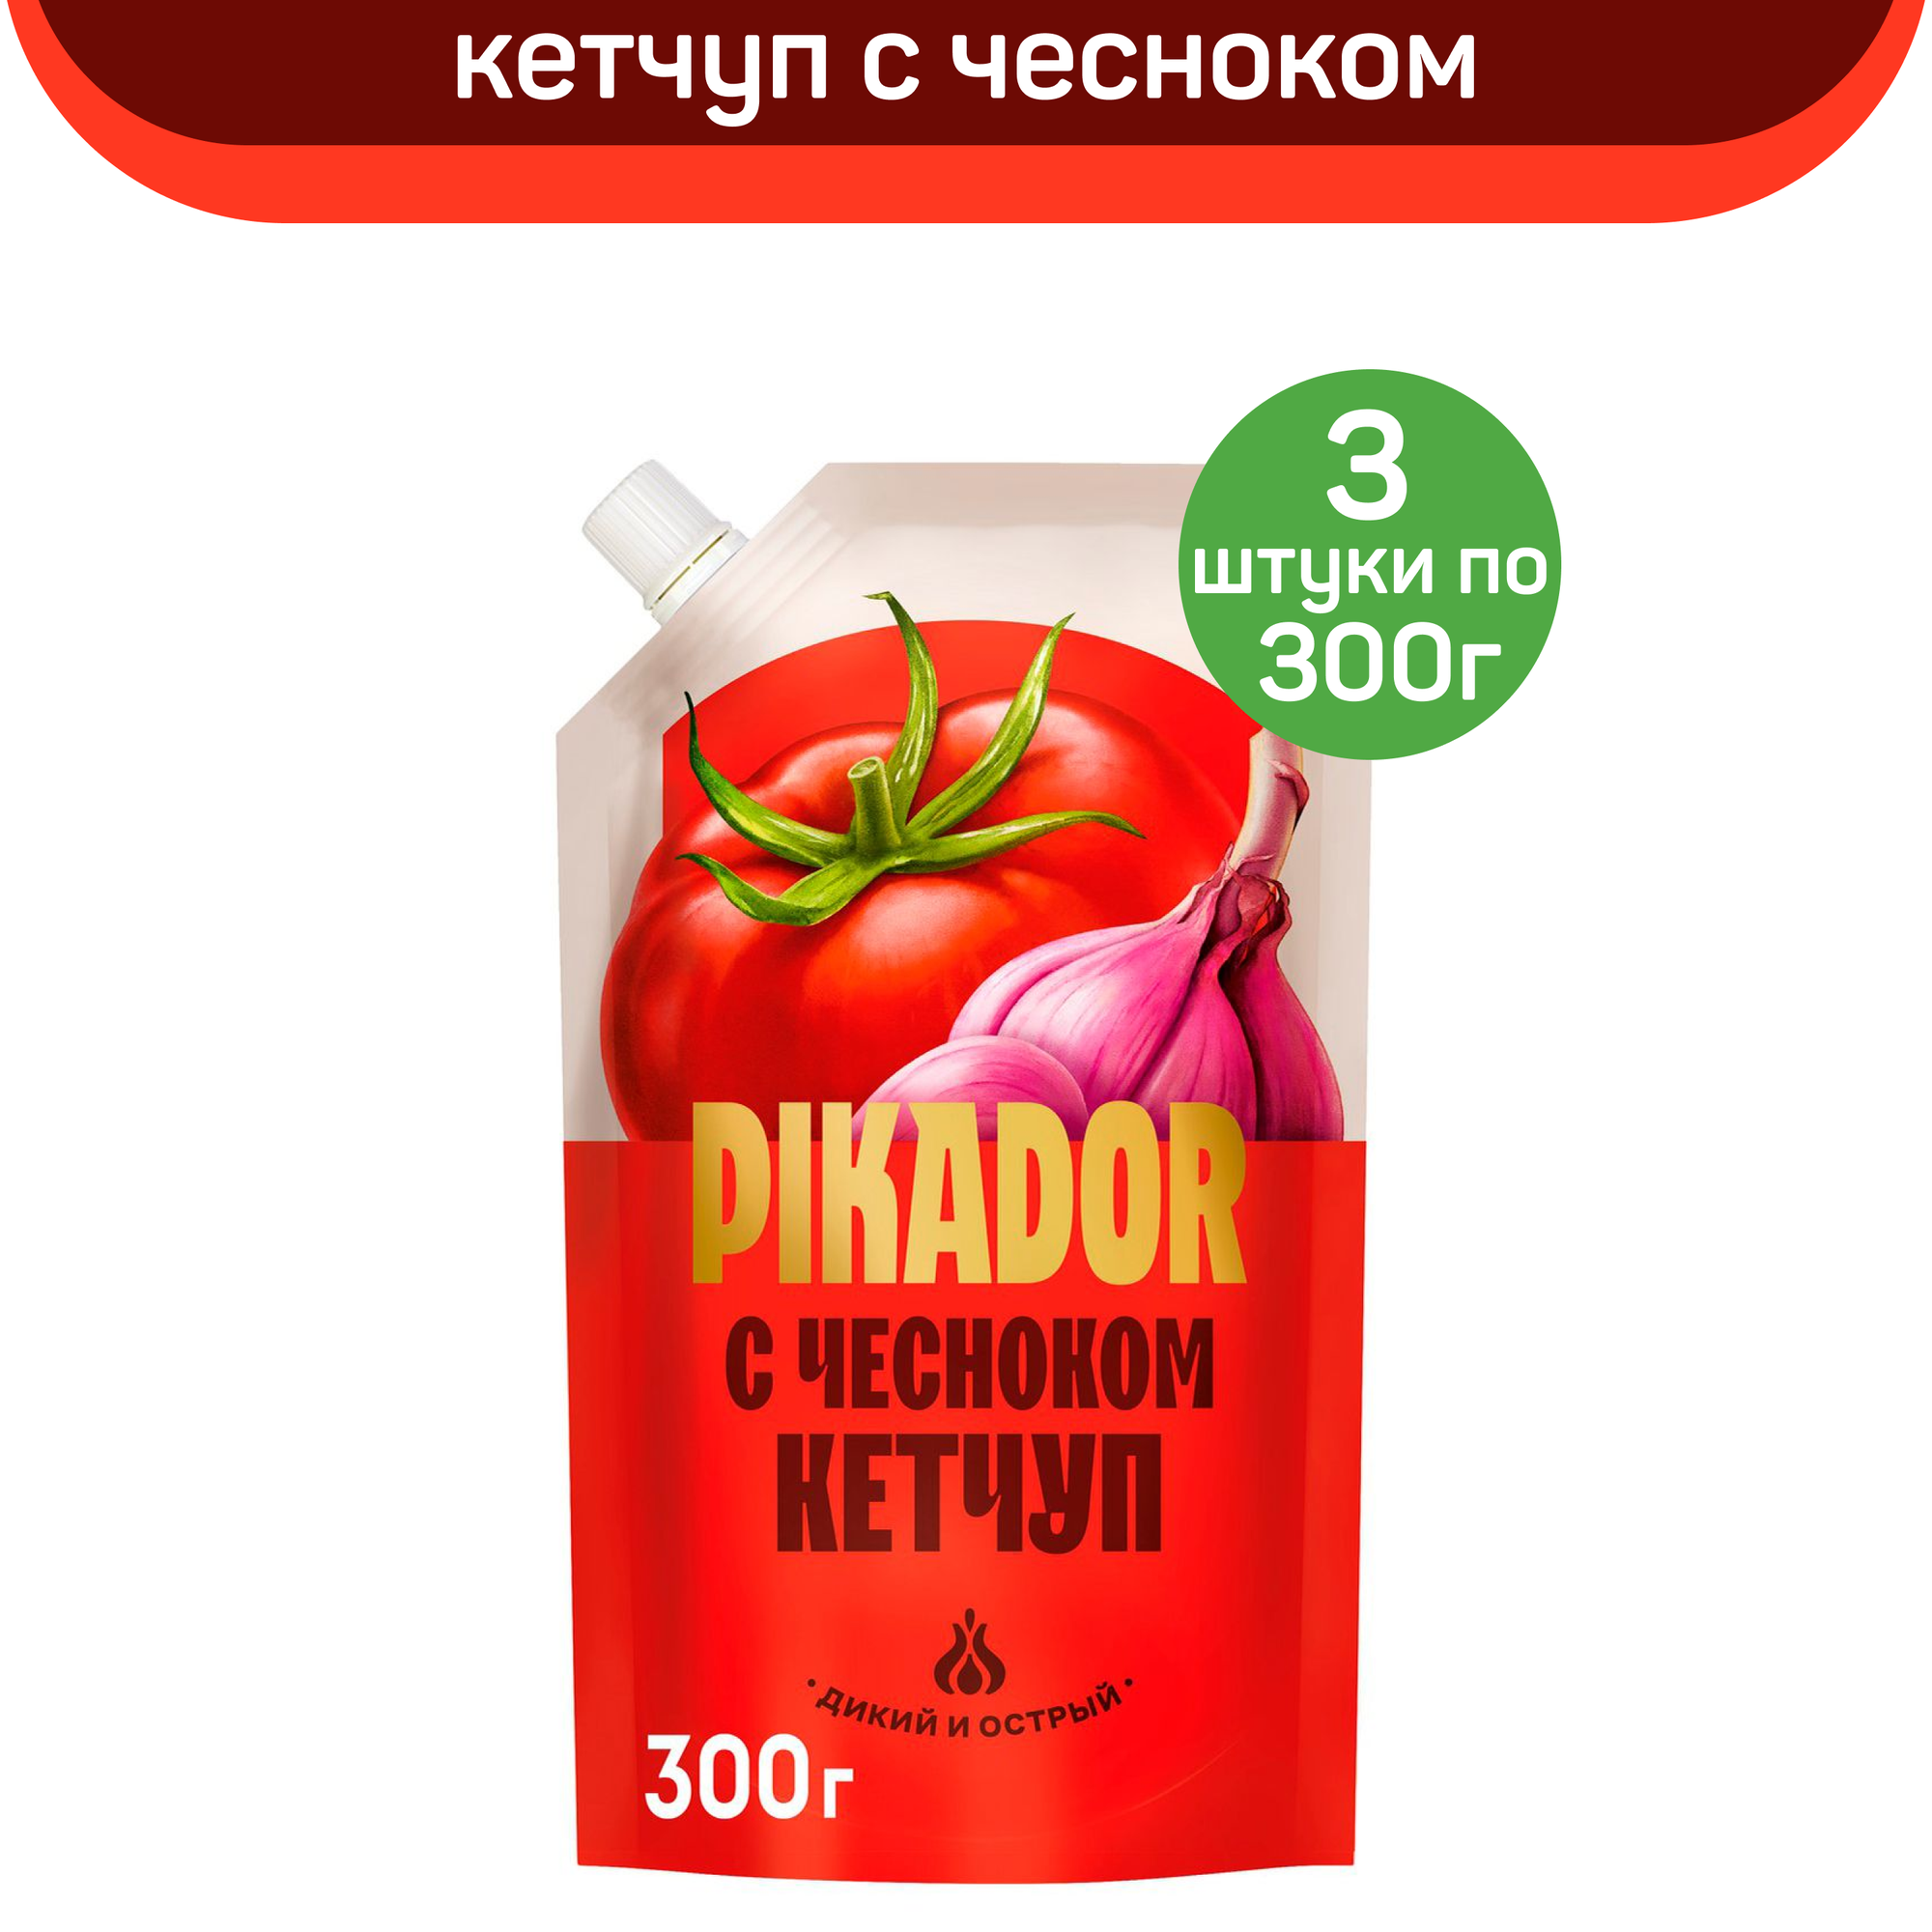 Кетчуп PIKADOR с чесноком, 3 шт по 300 г